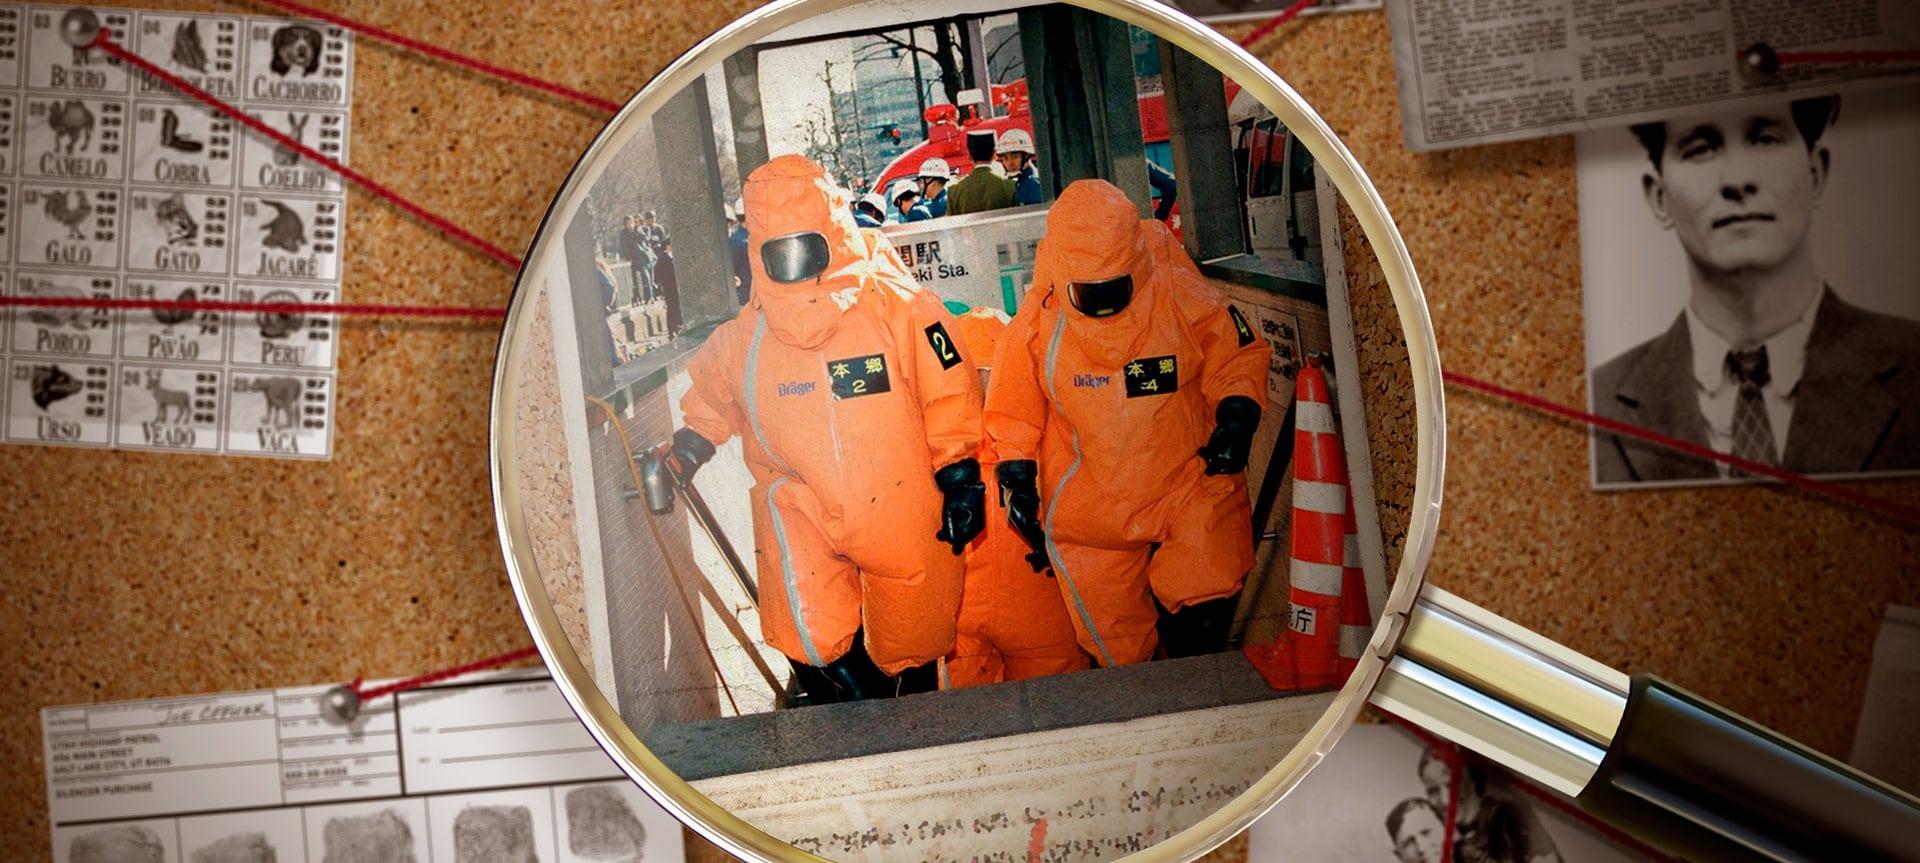 O culto que atacou o metrô de Tóquio com gás sarin